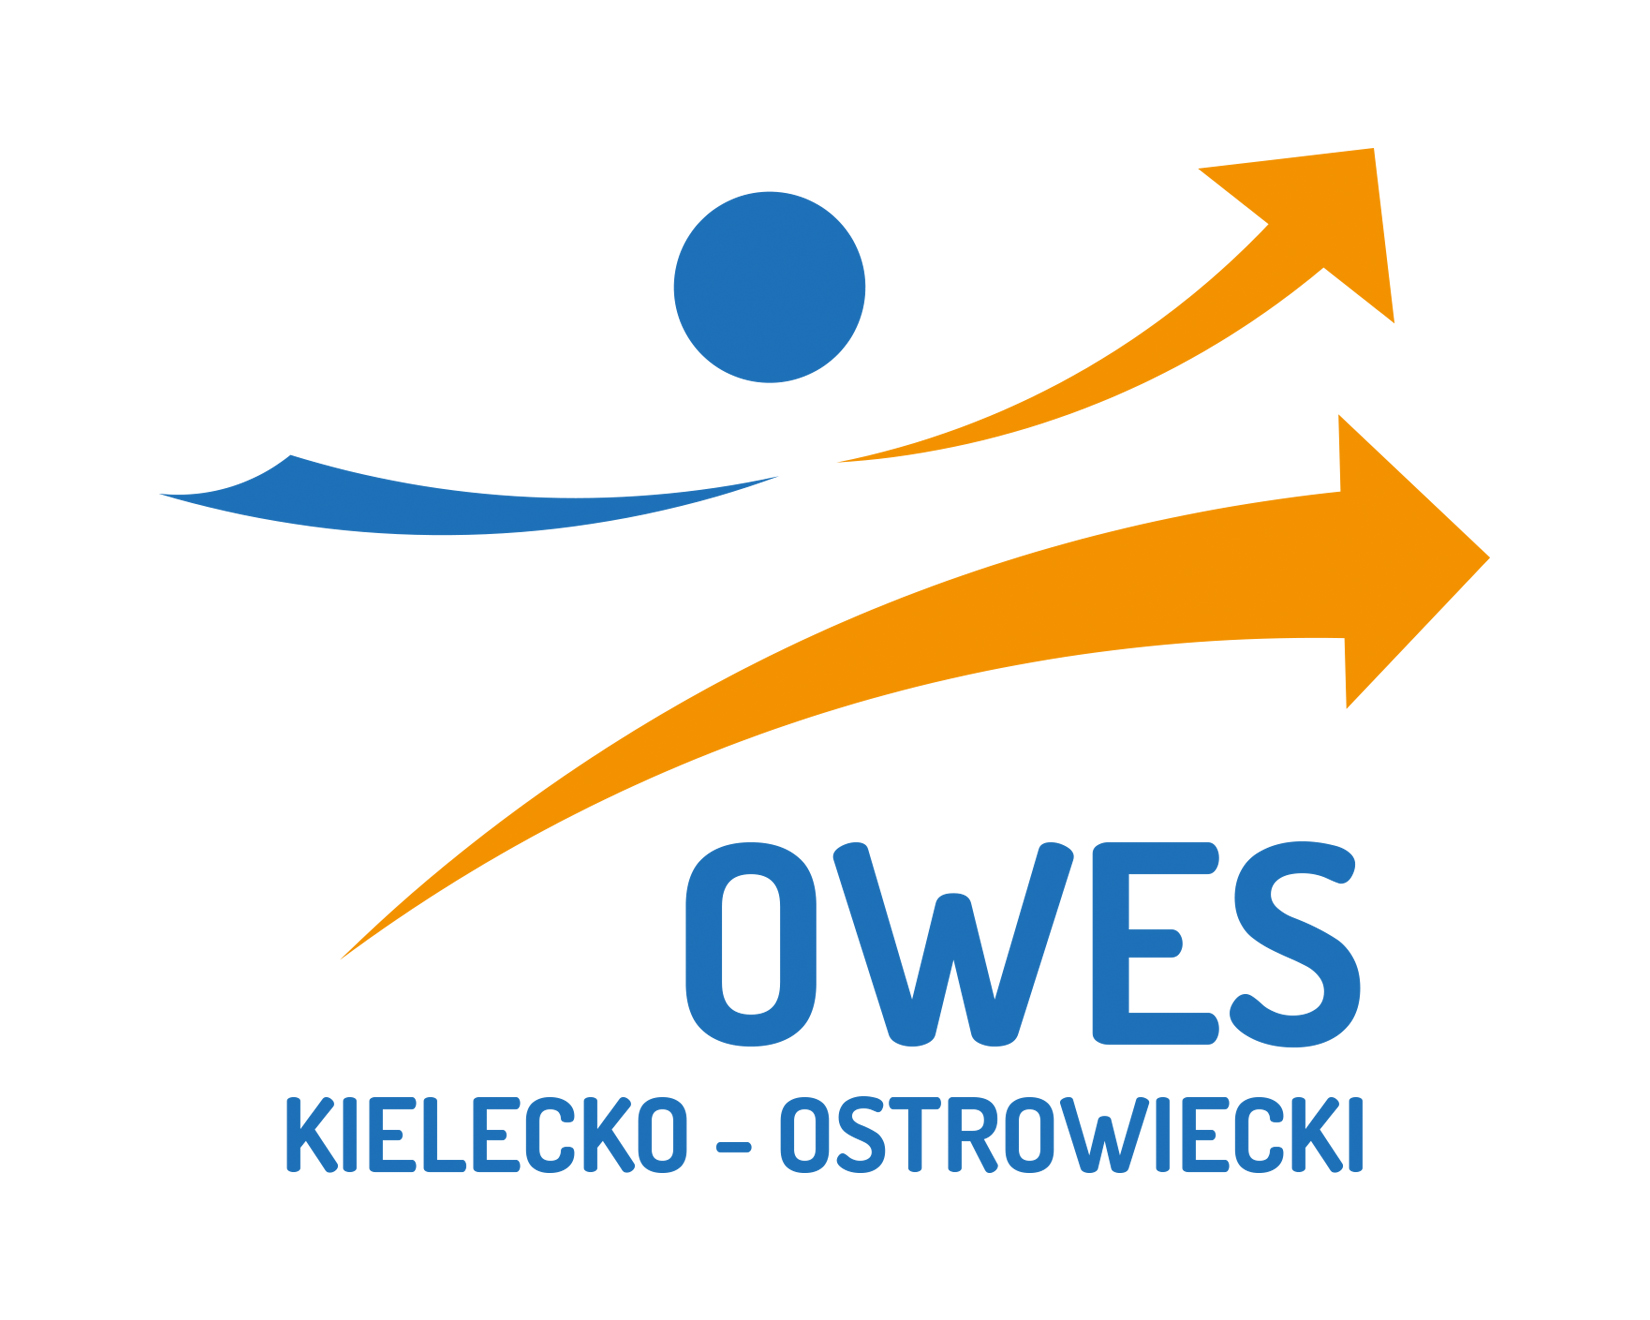 Logo OWES images